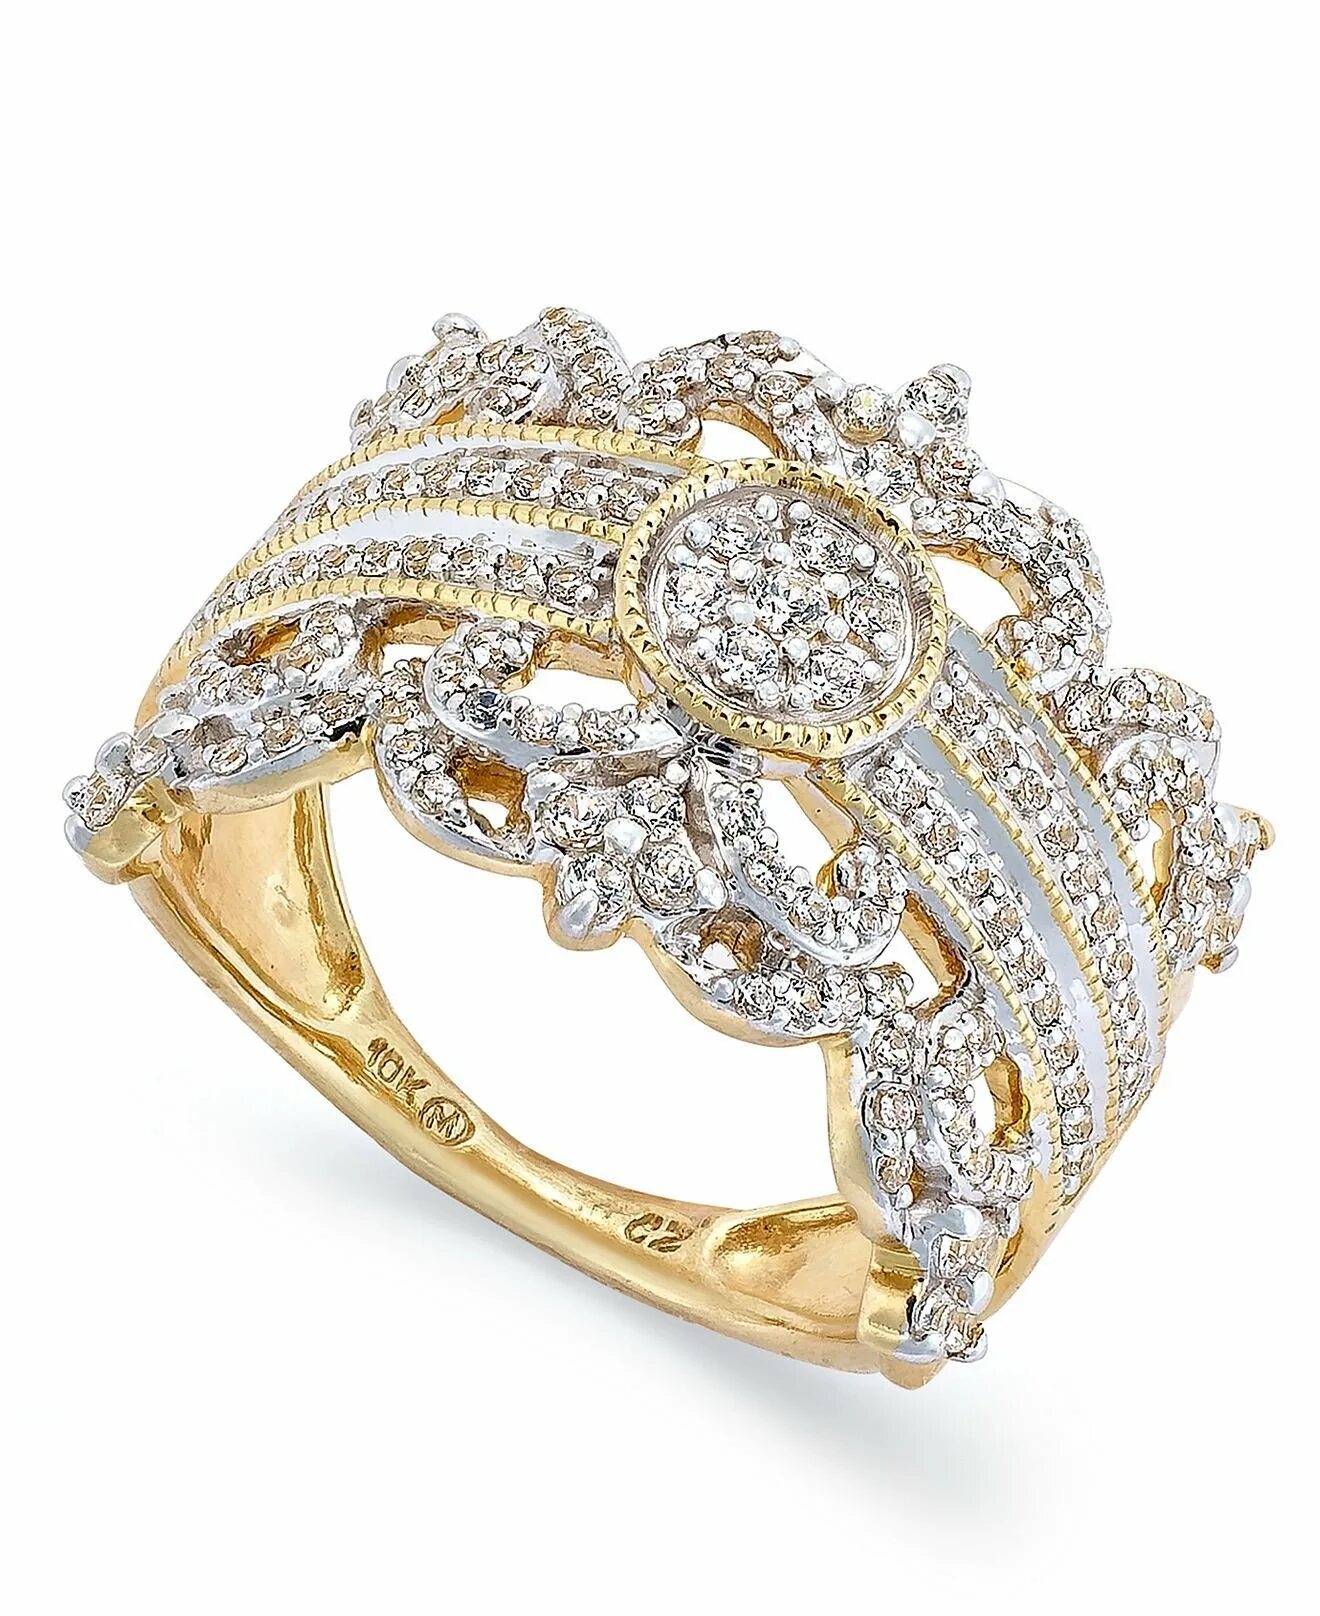 Золотое кольцо с бриллиантом кушон. Золотое кольцо с бриллиантами julianni. Кольцо Голд Даймонд. Золотое кольцо с бриллиантом женское кушон. Замужние золотые кольца